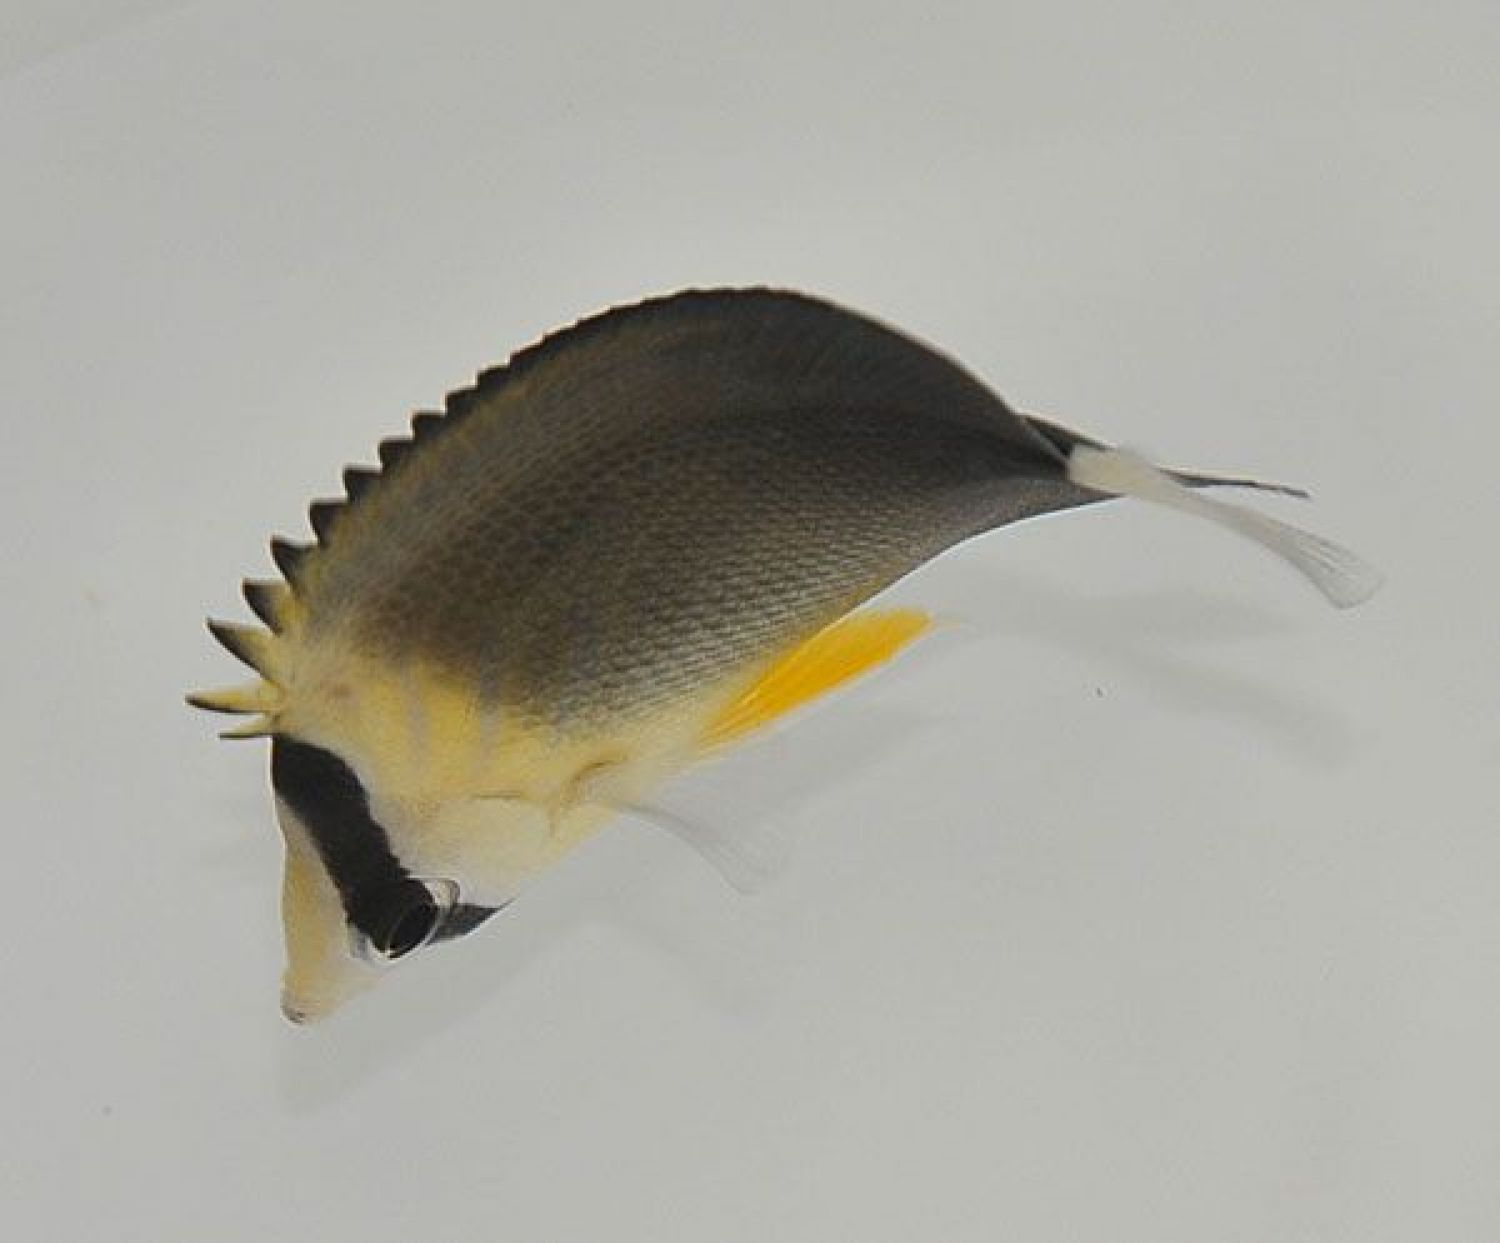 Chaetodon blackburnii Dunkler Blaustreifen-Falterfisch